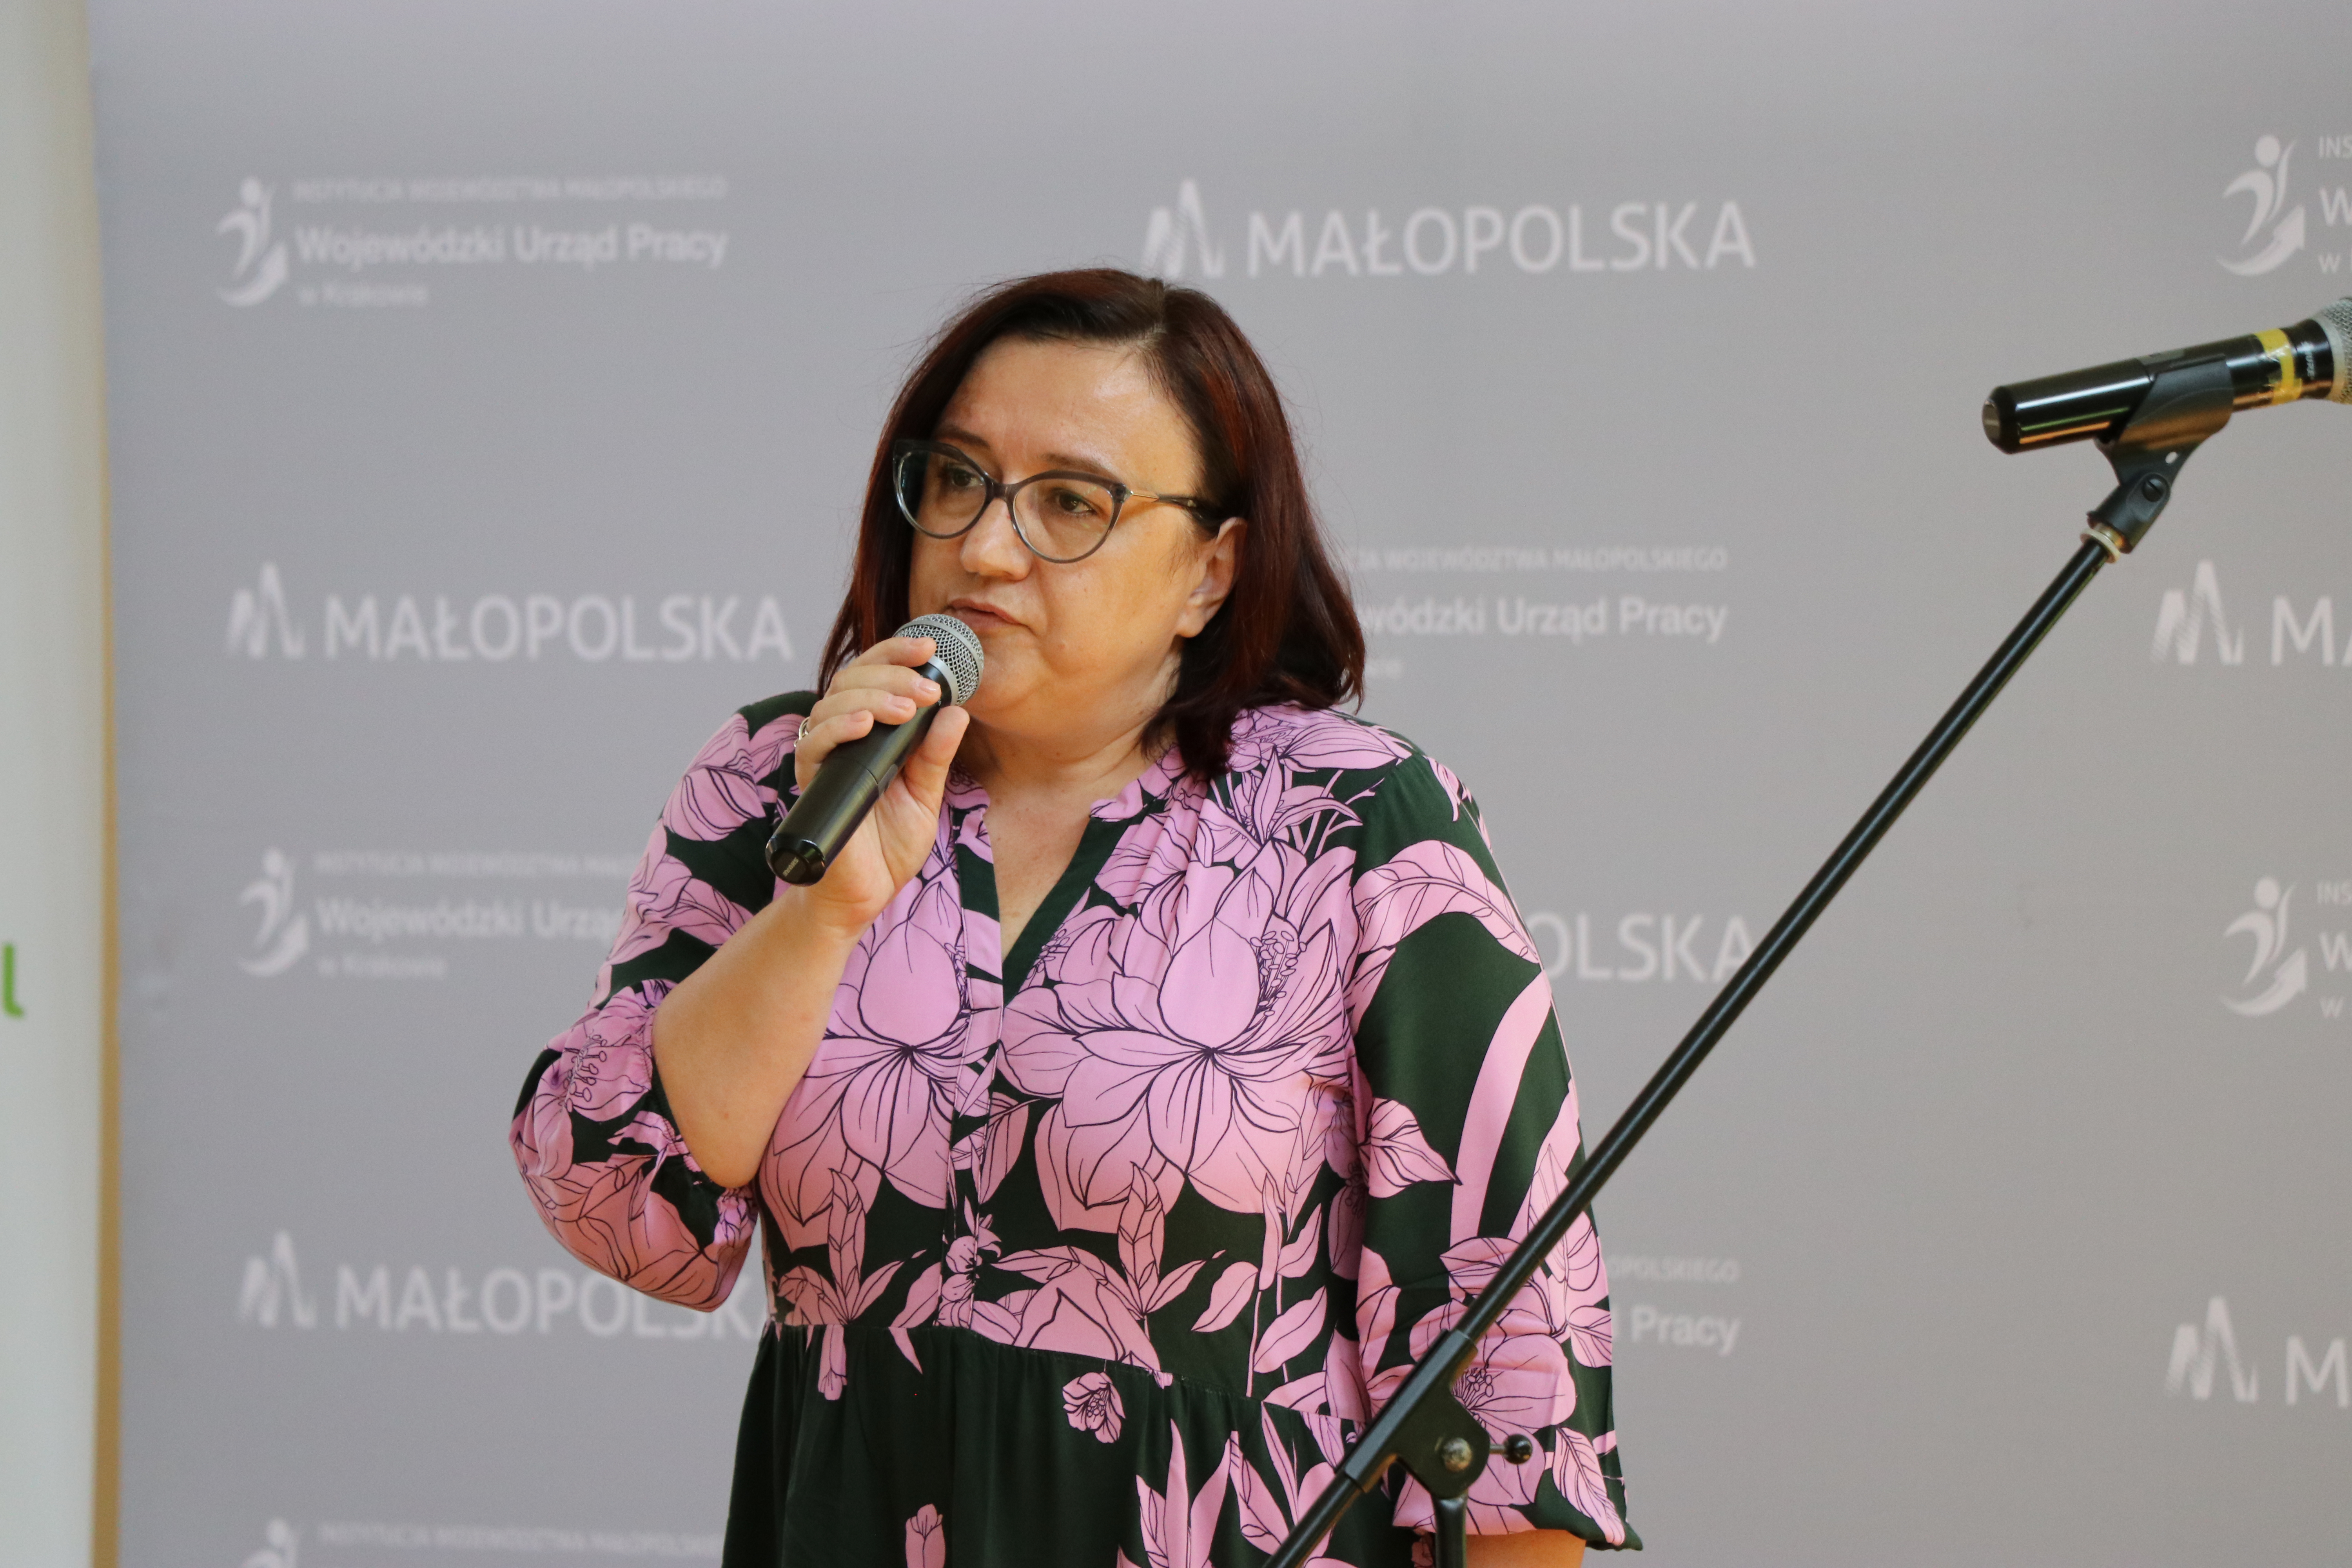 Zdjęcie przedstawia kobietę o brązowych włosach, mówiącą do mikrofonu. W tle napis Małopolska oraz Wojewódzki Urząd Pracy w Krakowie.